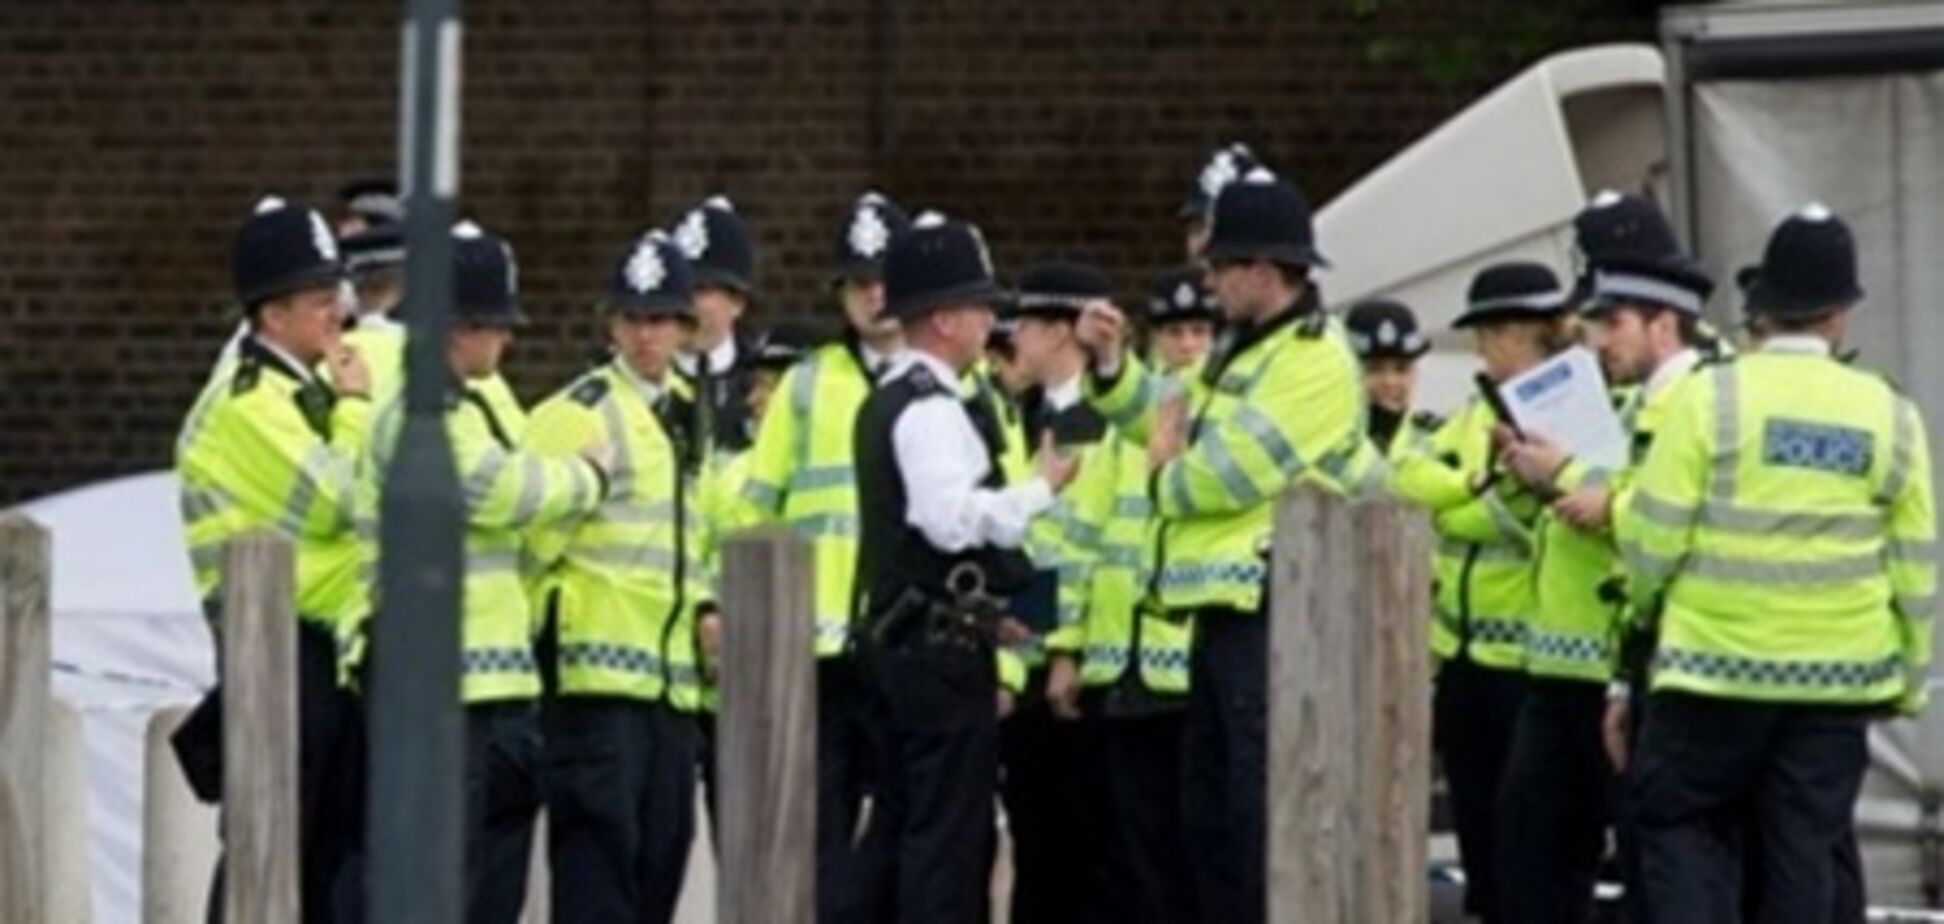 Заарештовано ще одного підозрюваного в лондонському теракті